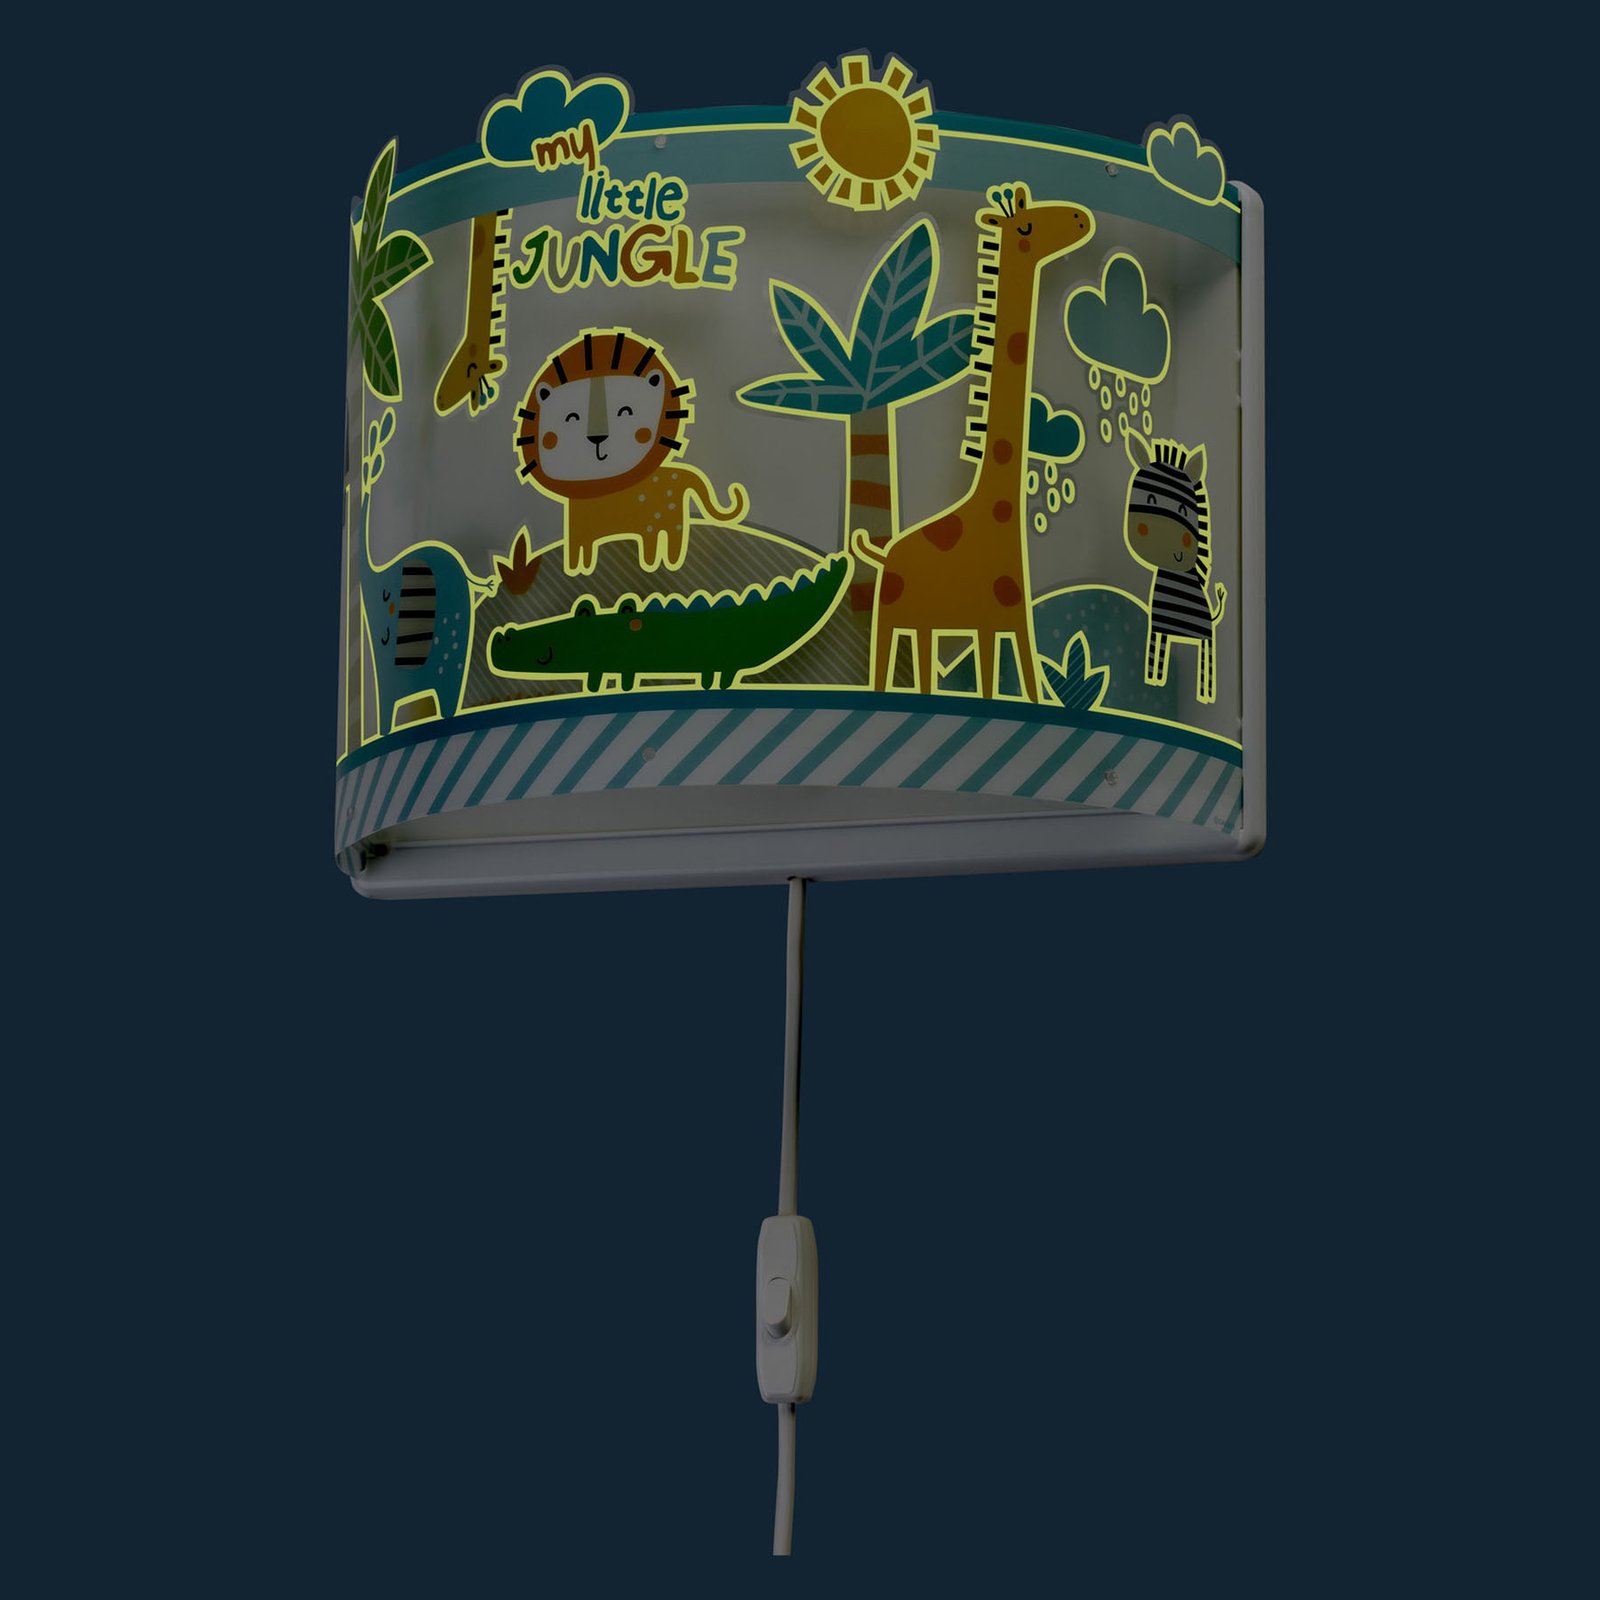 Little Jungle-væglampe til børn med stik